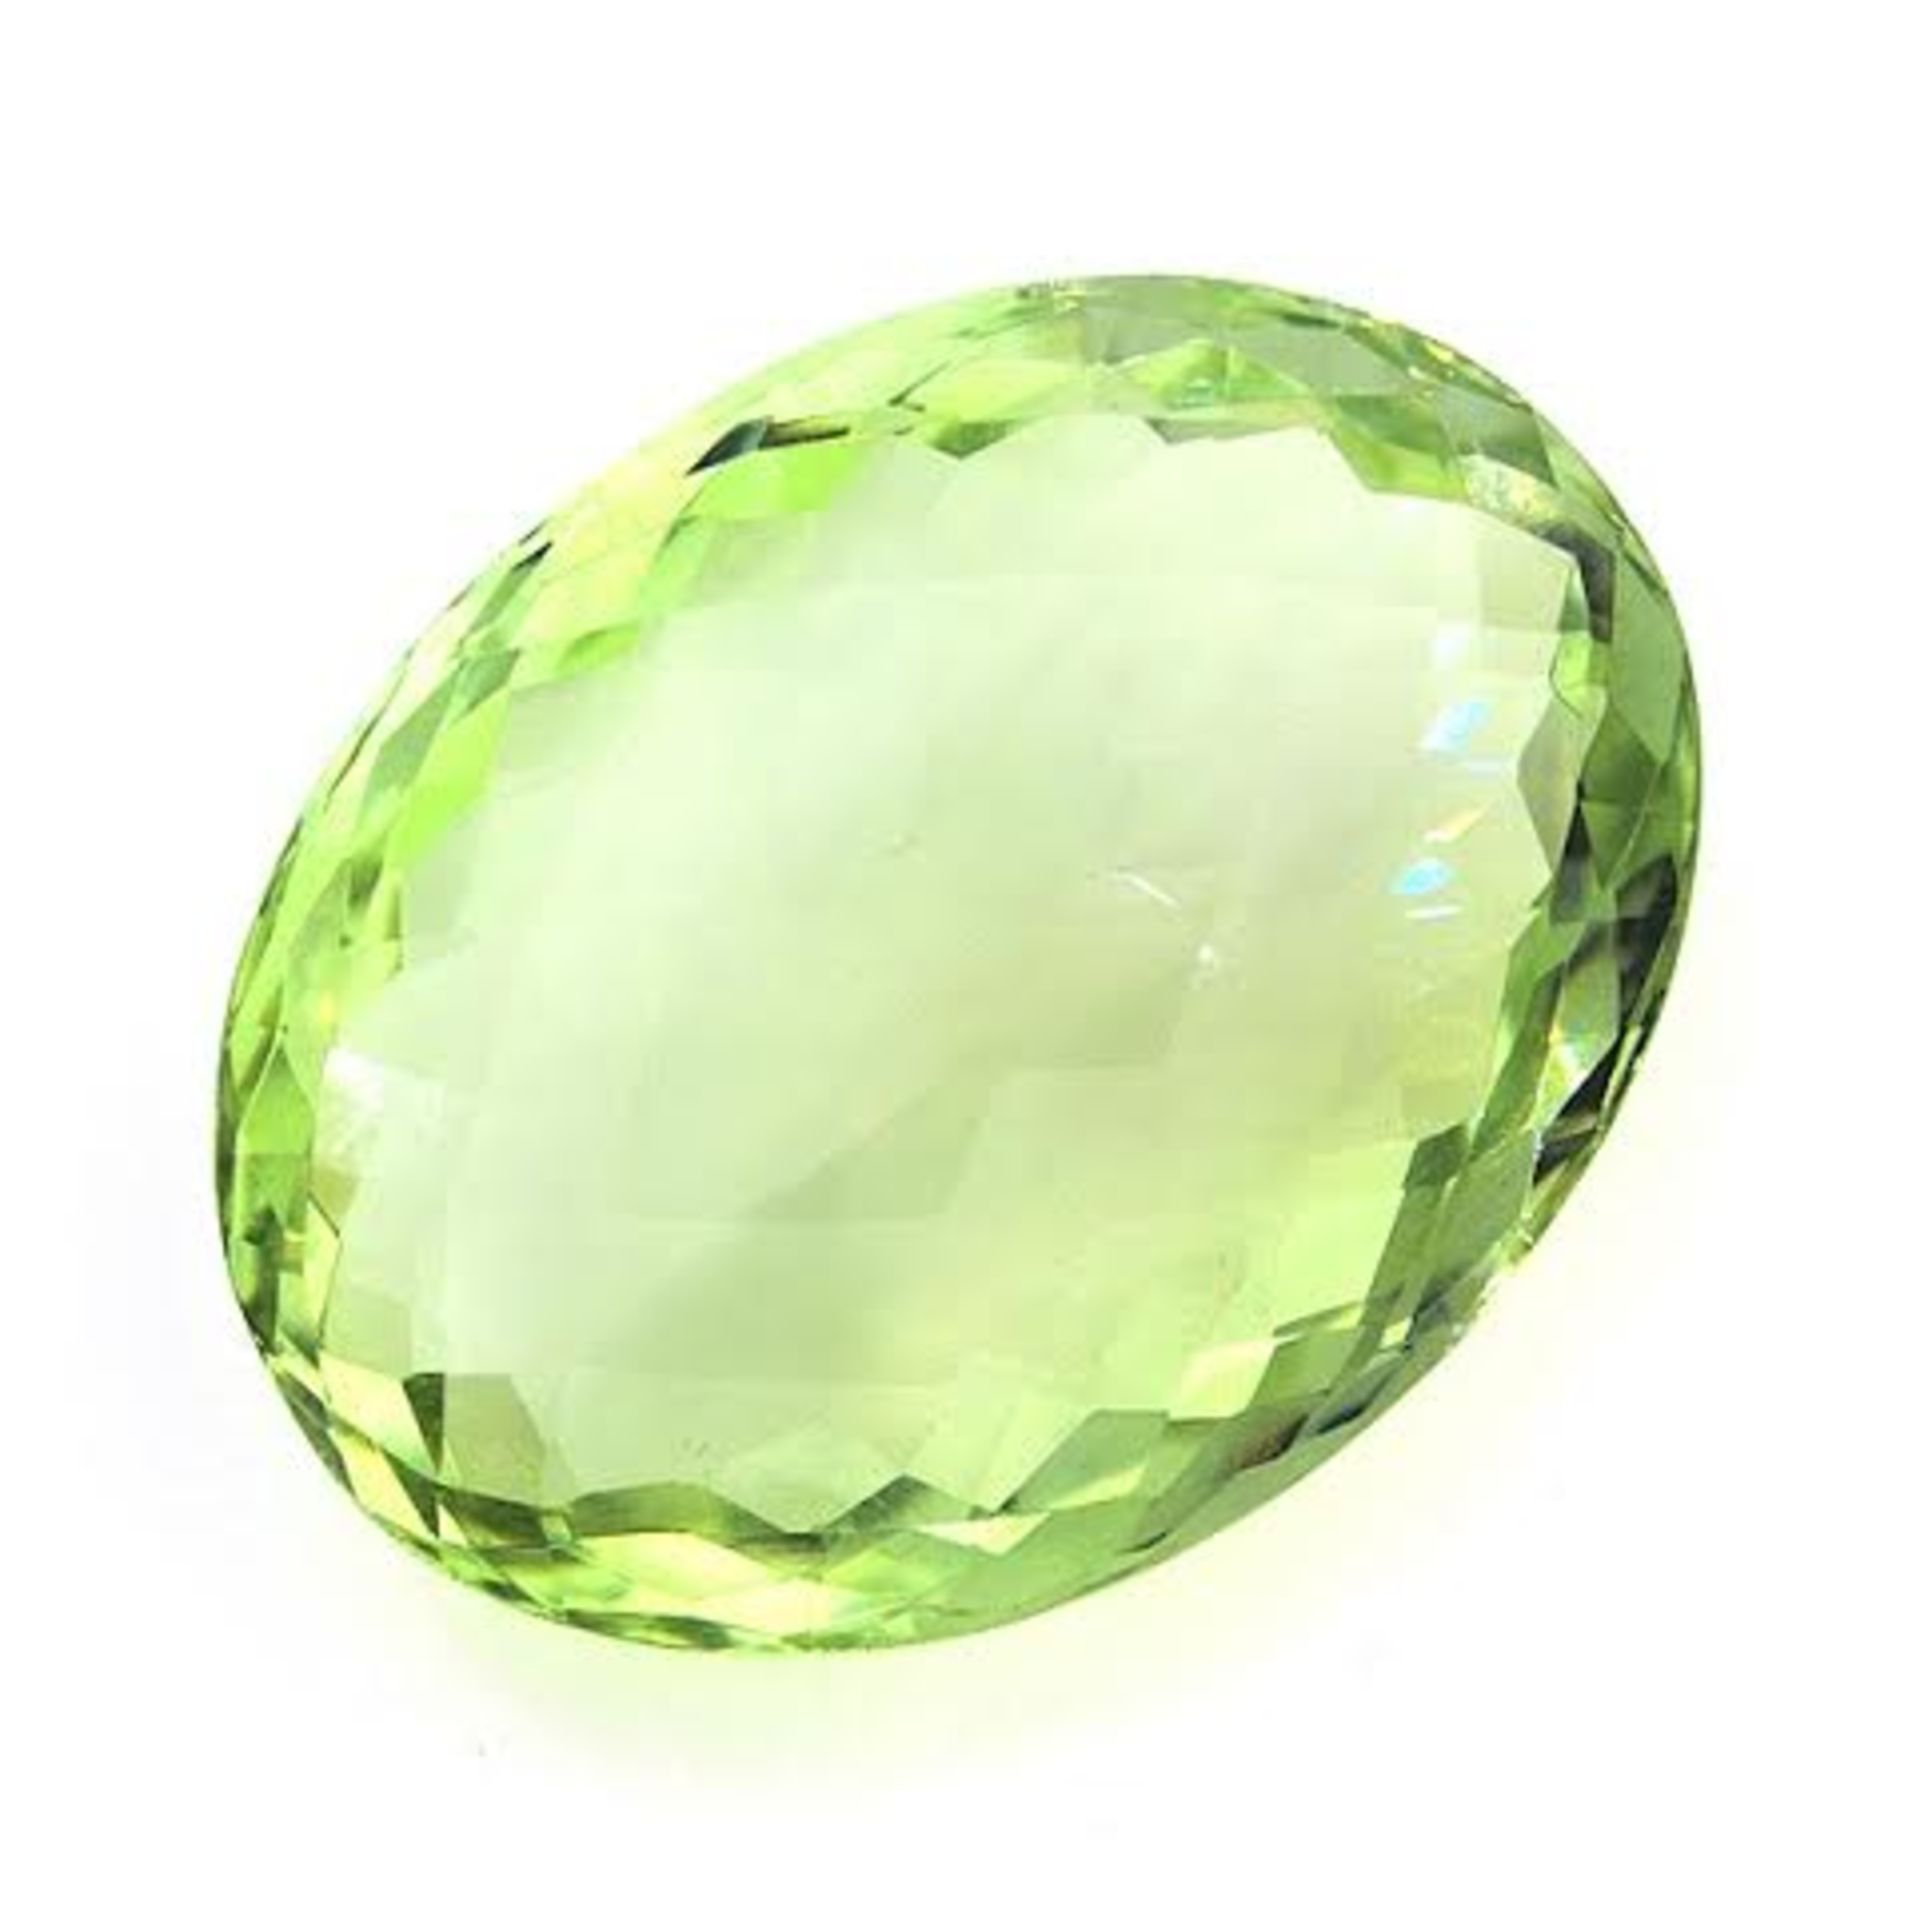 A stunning Oval Cut Green Quartz Gemstone = 36.63 carat, with eye clean clarity.